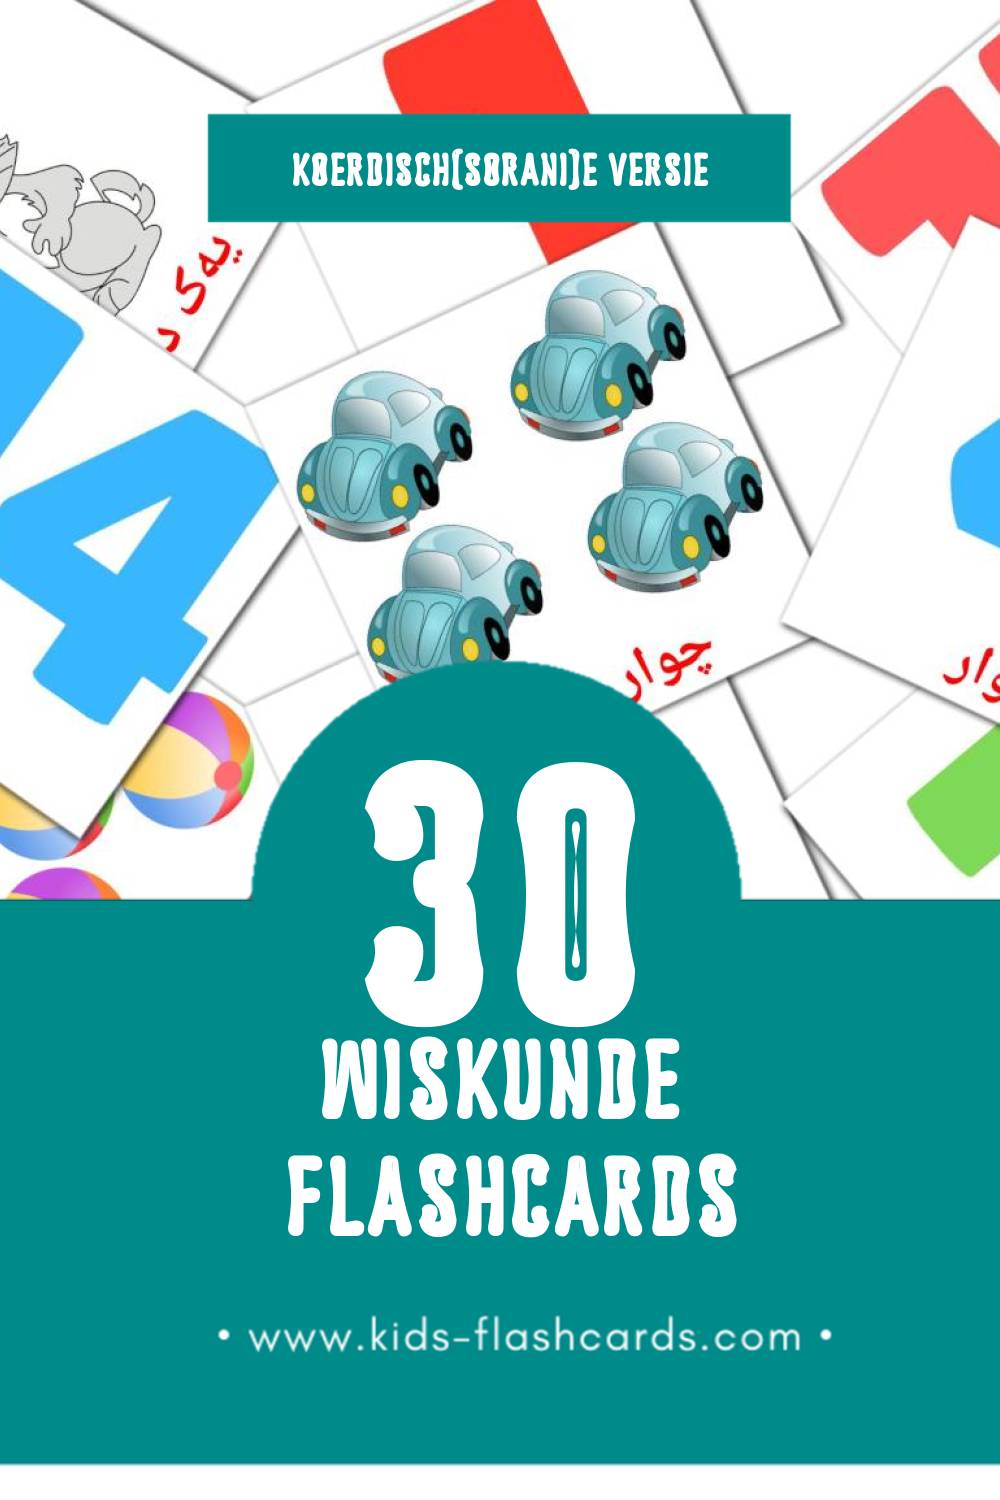 Visuele بیرکاری Flashcards voor Kleuters (30 kaarten in het Koerdisch(sorani))